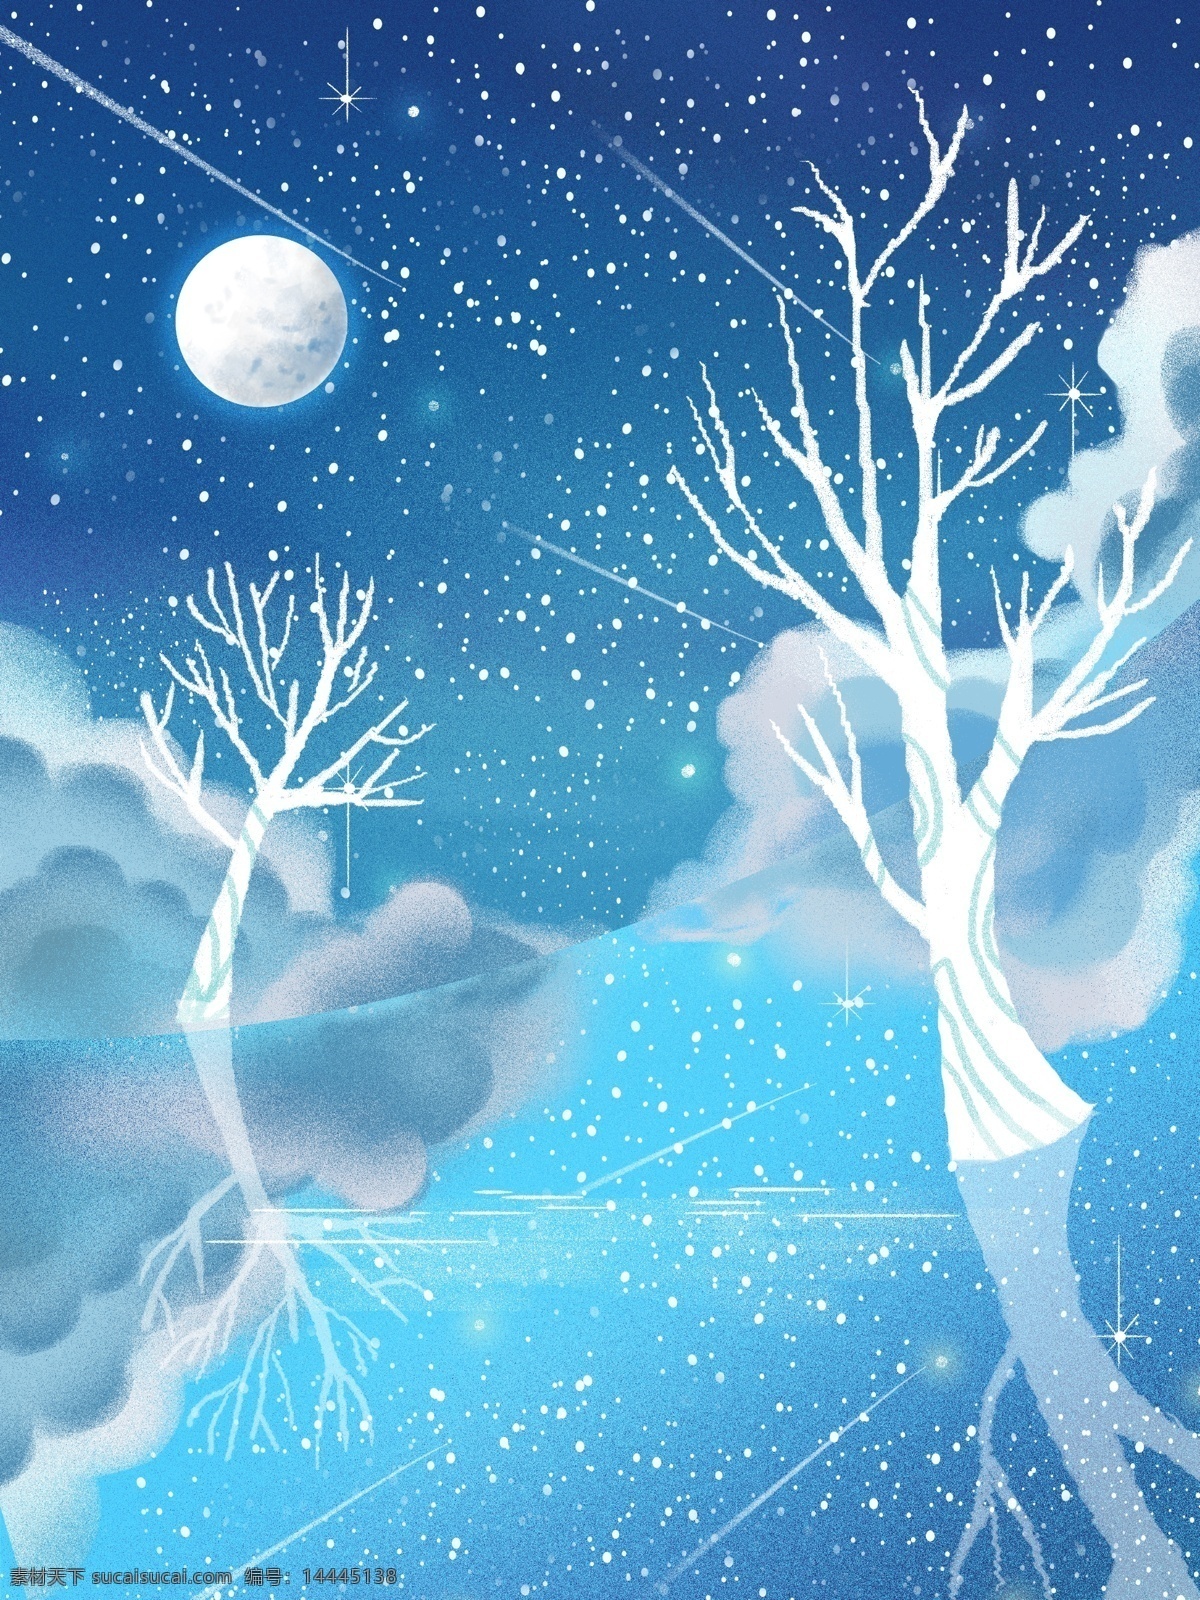 唯美 蓝色 星空 背景 晚安 树林 星空背景 广告背景 彩绘背景 通用背景 促销背景 背景展板图 背景图